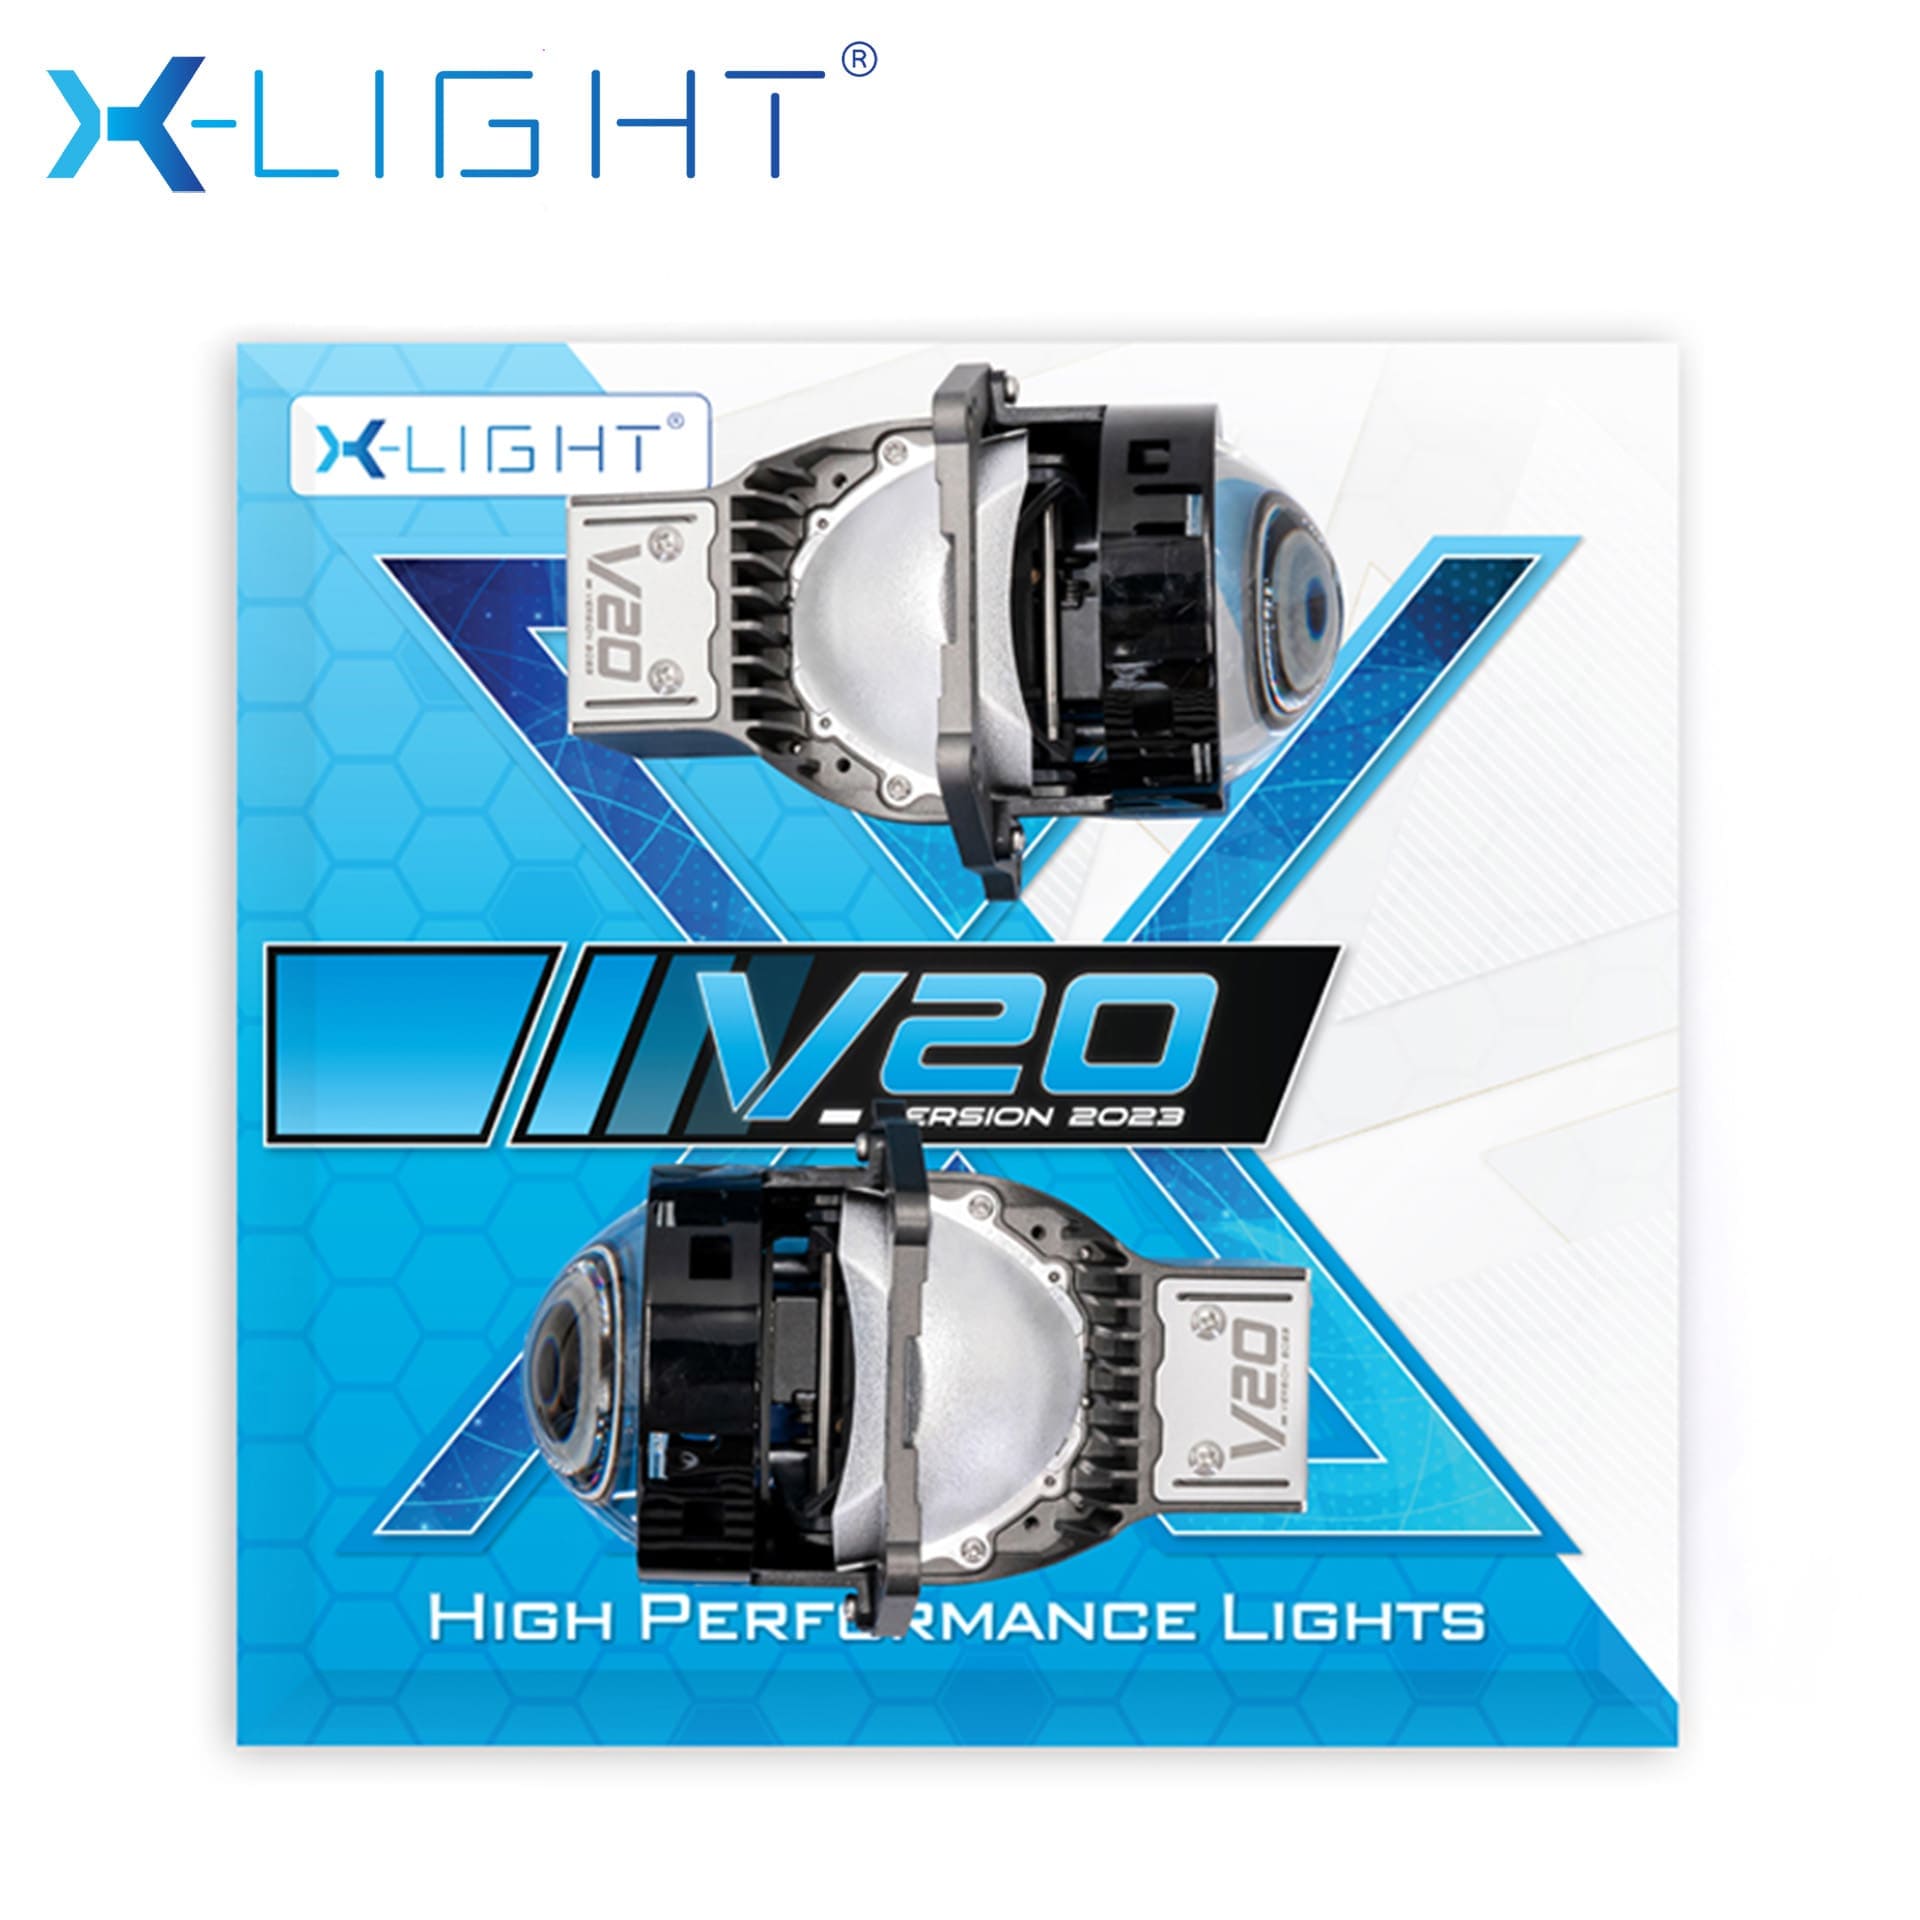 BI LED X-LIGHT V20 2023 NHIỆT MÀU 5000K